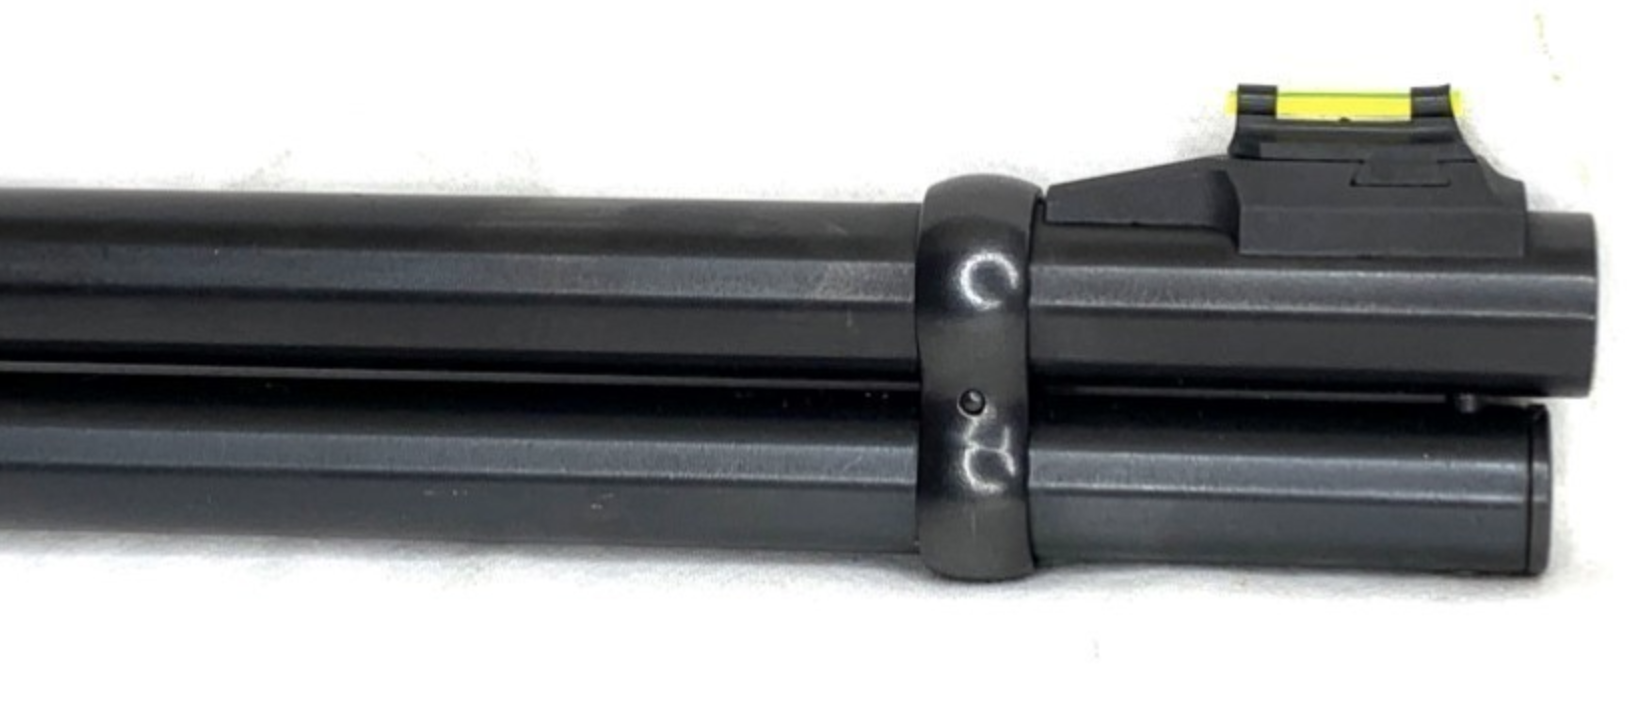 Winchester Model 9410 Lever Action Shotgun in 410 Ga. - Lever Action Shotguns at GunBroker.com : 996162164 2023-09-21 14-25-39.png